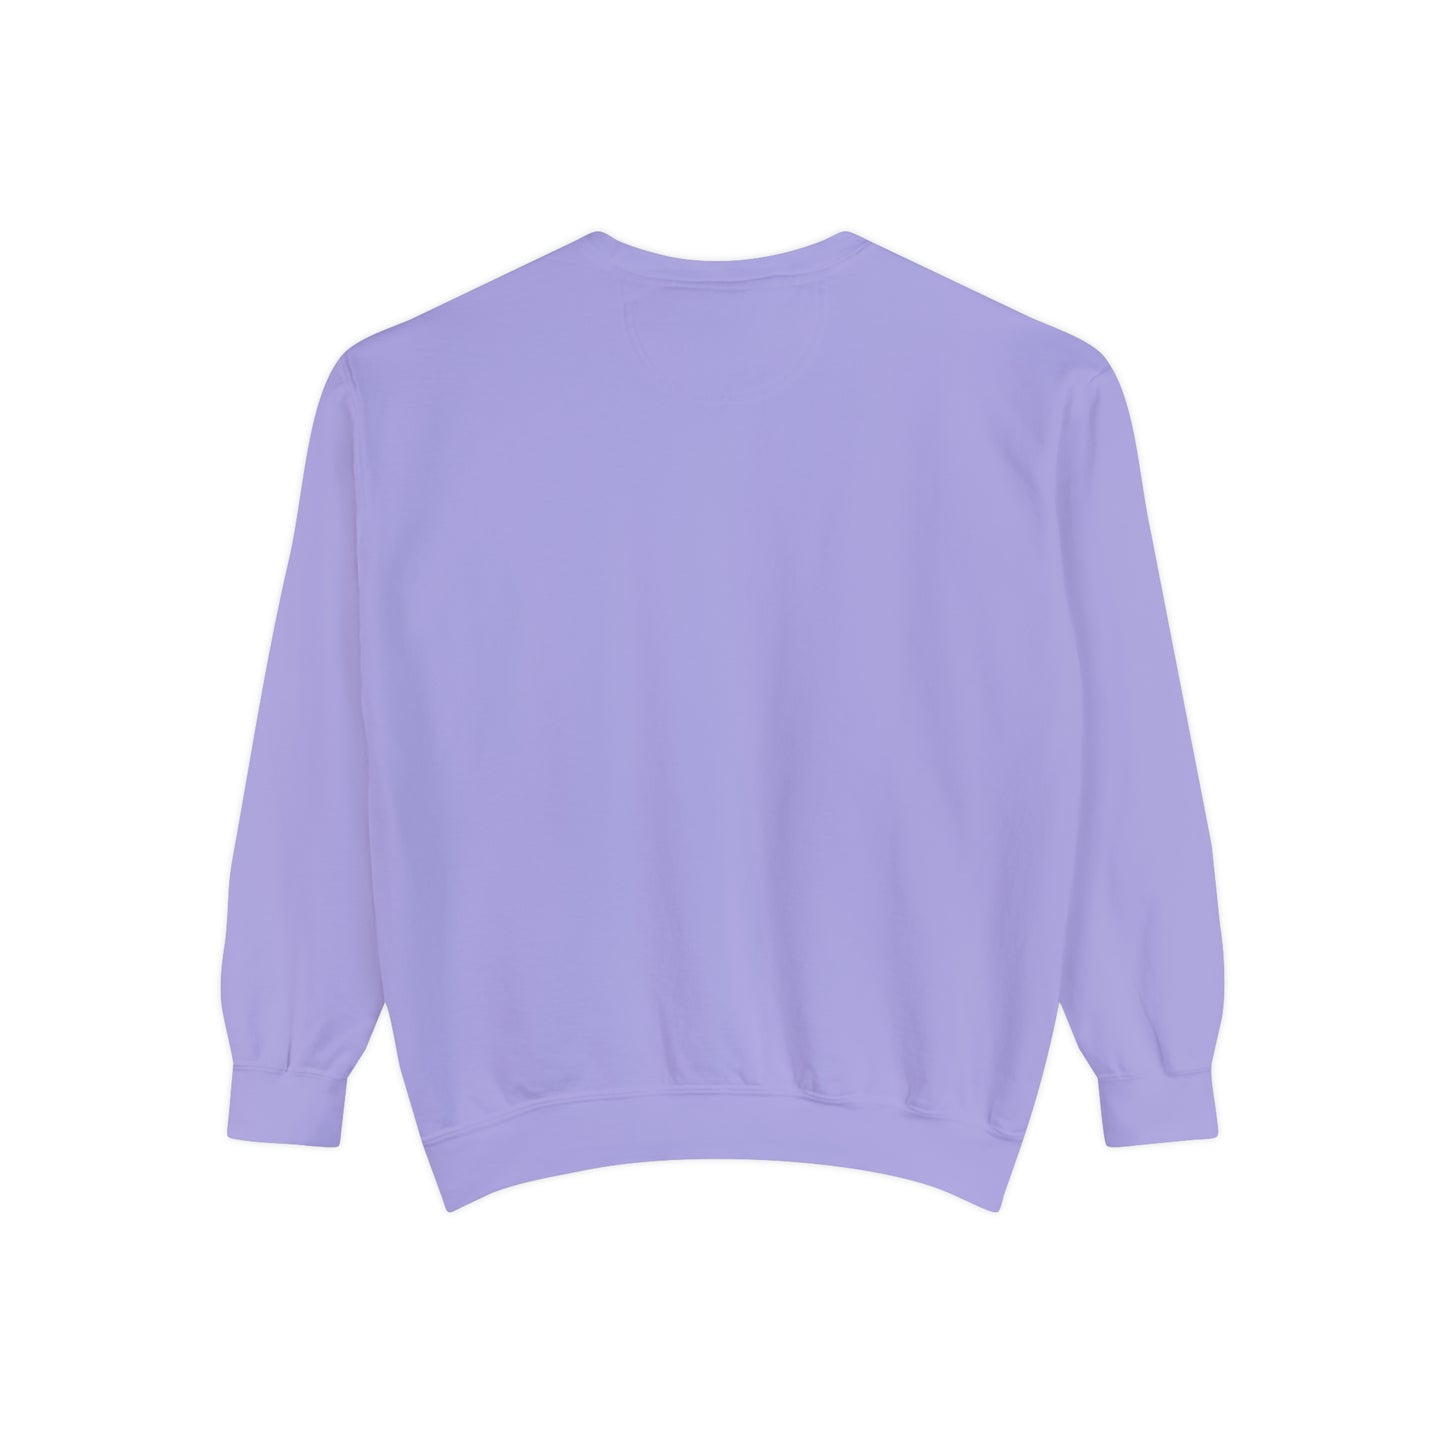 A+ Teacher Women's Garment-Dyed Sweatshirt